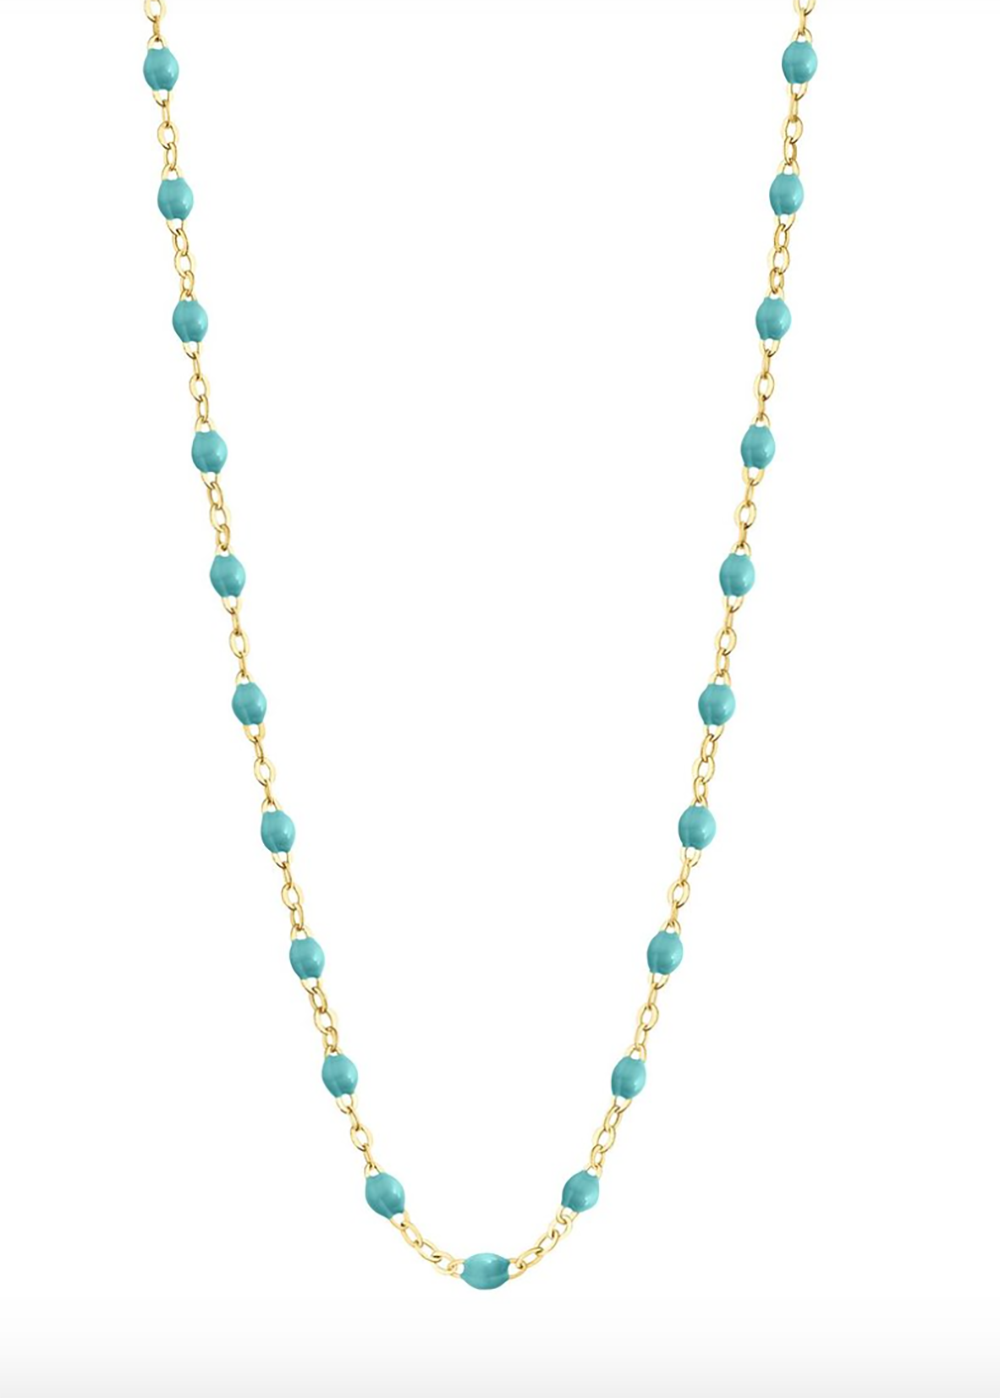 gigiCLOZEAU Jewlery - classic gigi necklace |Turquoise Green|